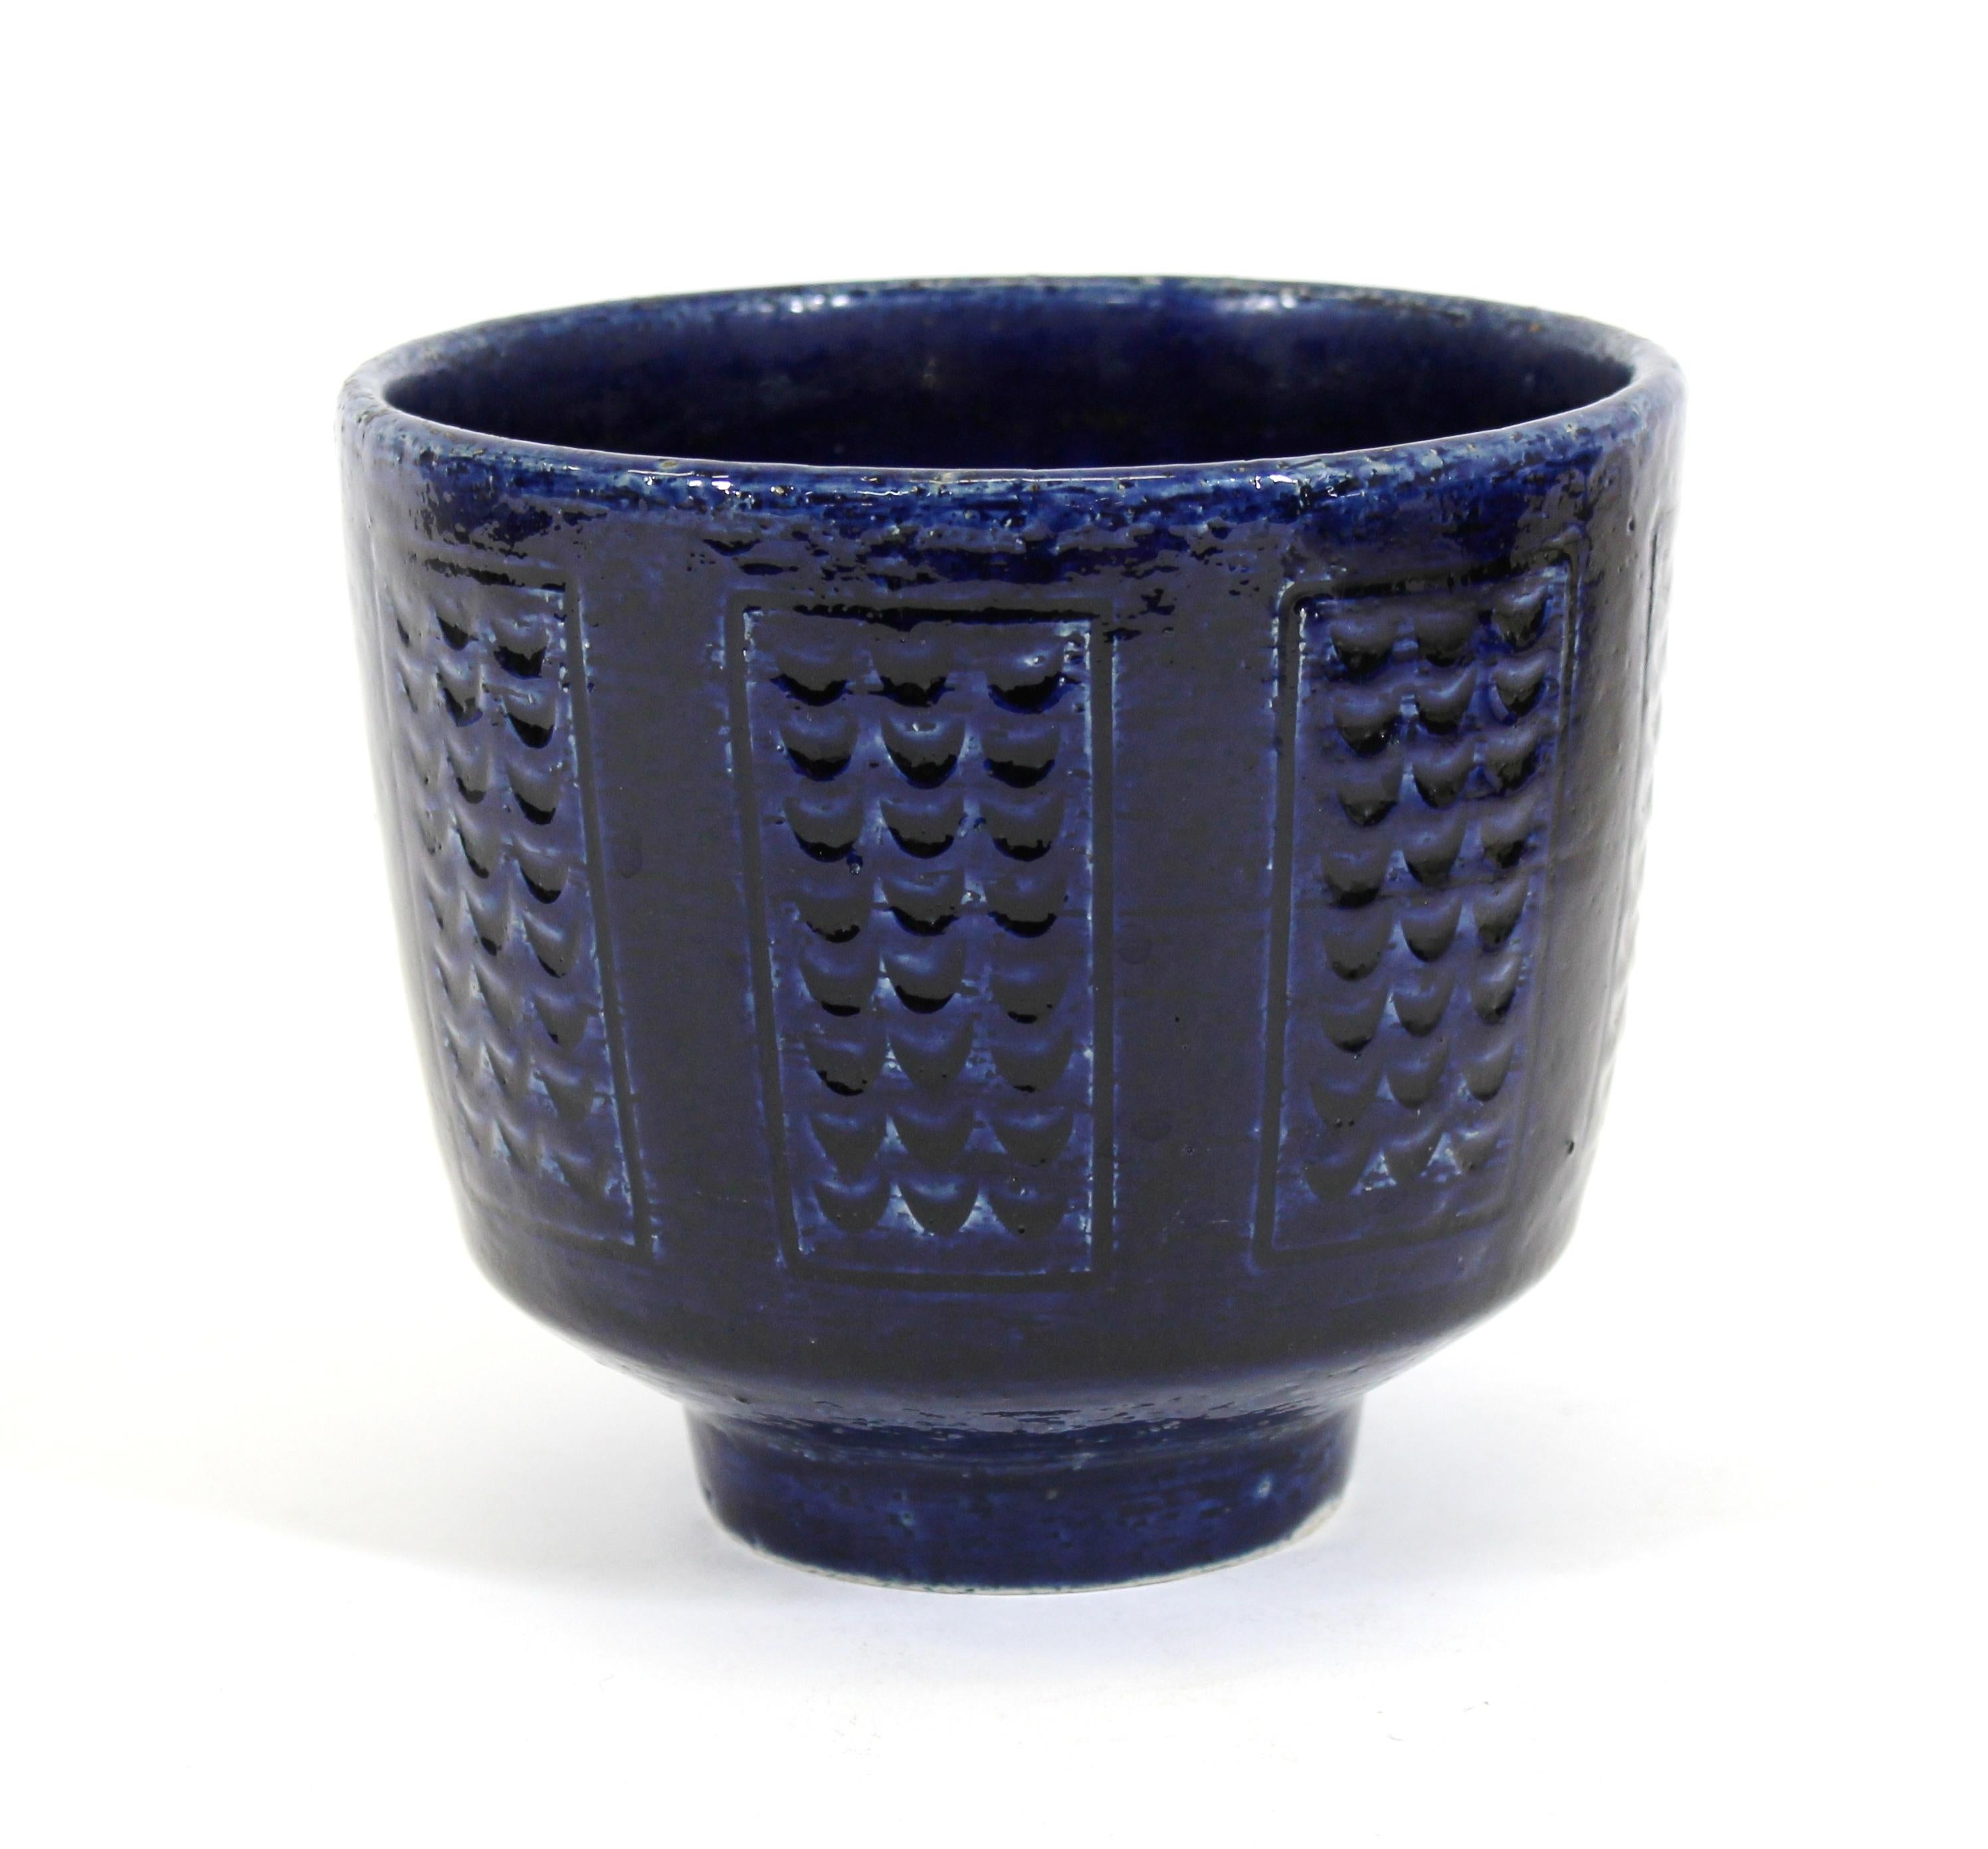 Per Linnemann-Schmidt for Palshus Danish Mid-Century Modern blue glazed ceramic bowl, marked and signed on the bottom.